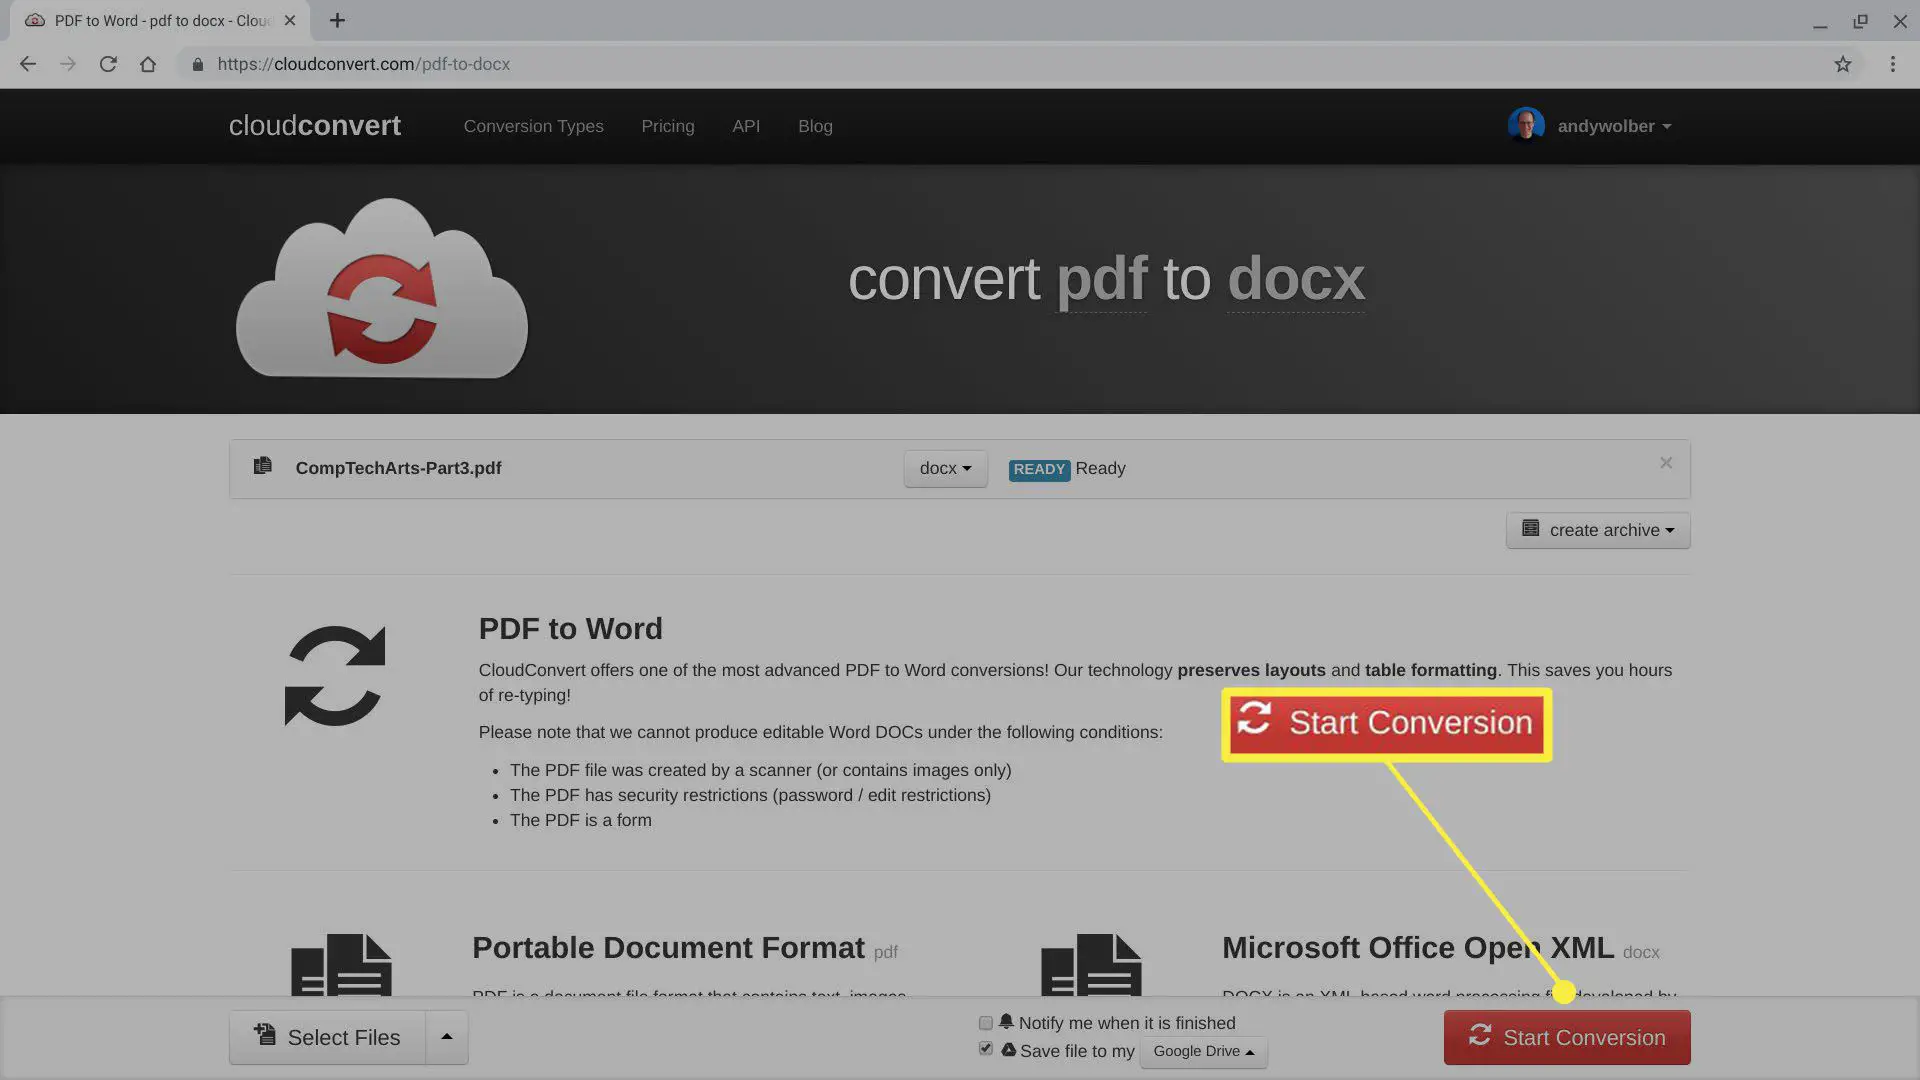 Captura de tela da conversão de arquivo .pdf para .docx em CloudConvert.com